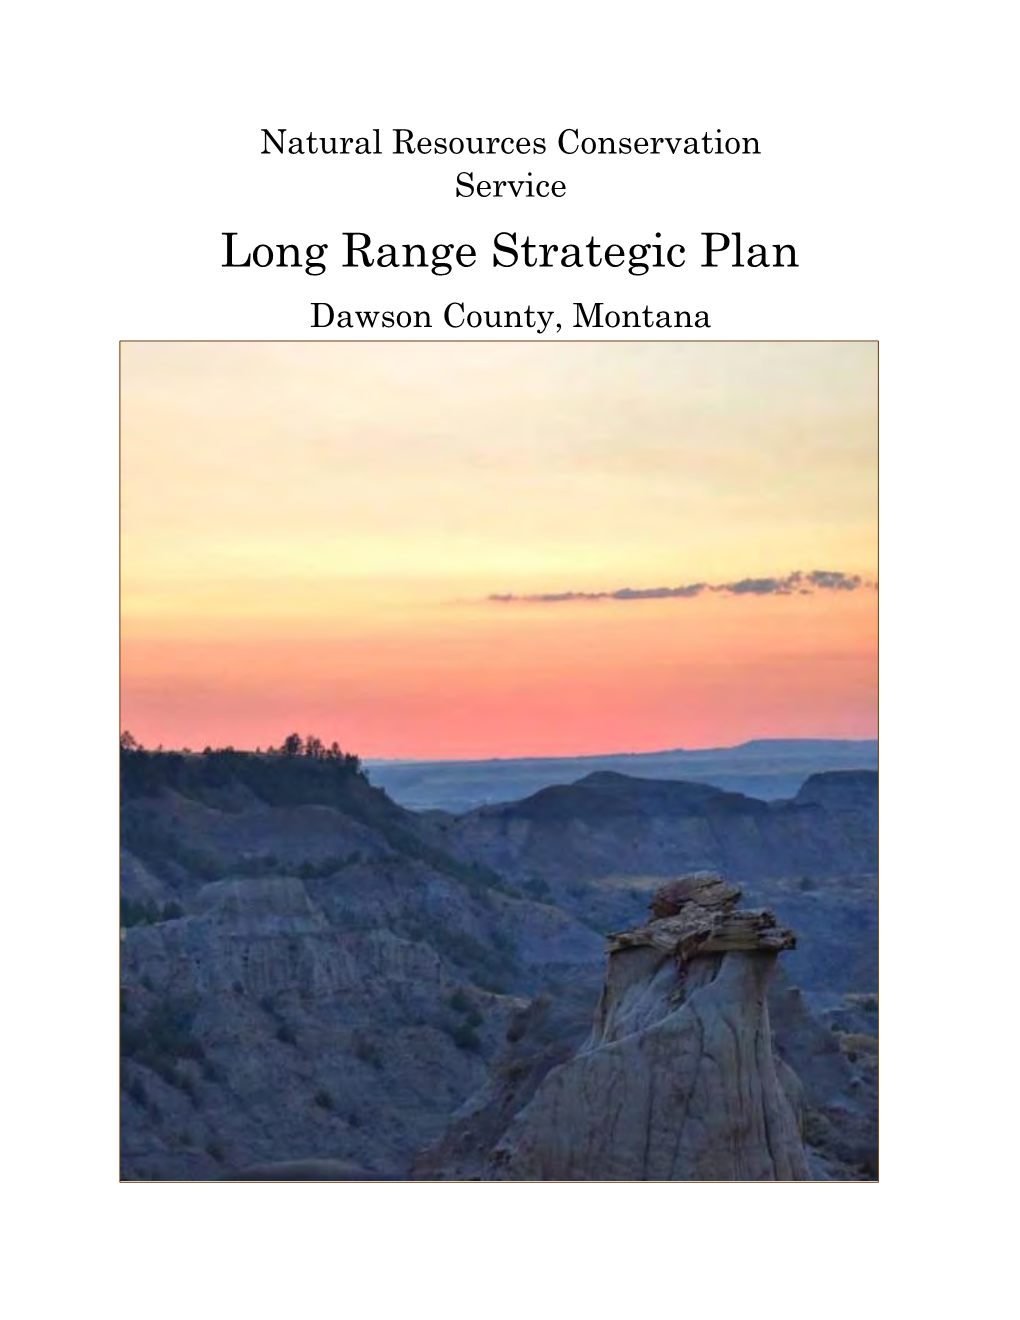 Dawson County Long Range Plan 2019